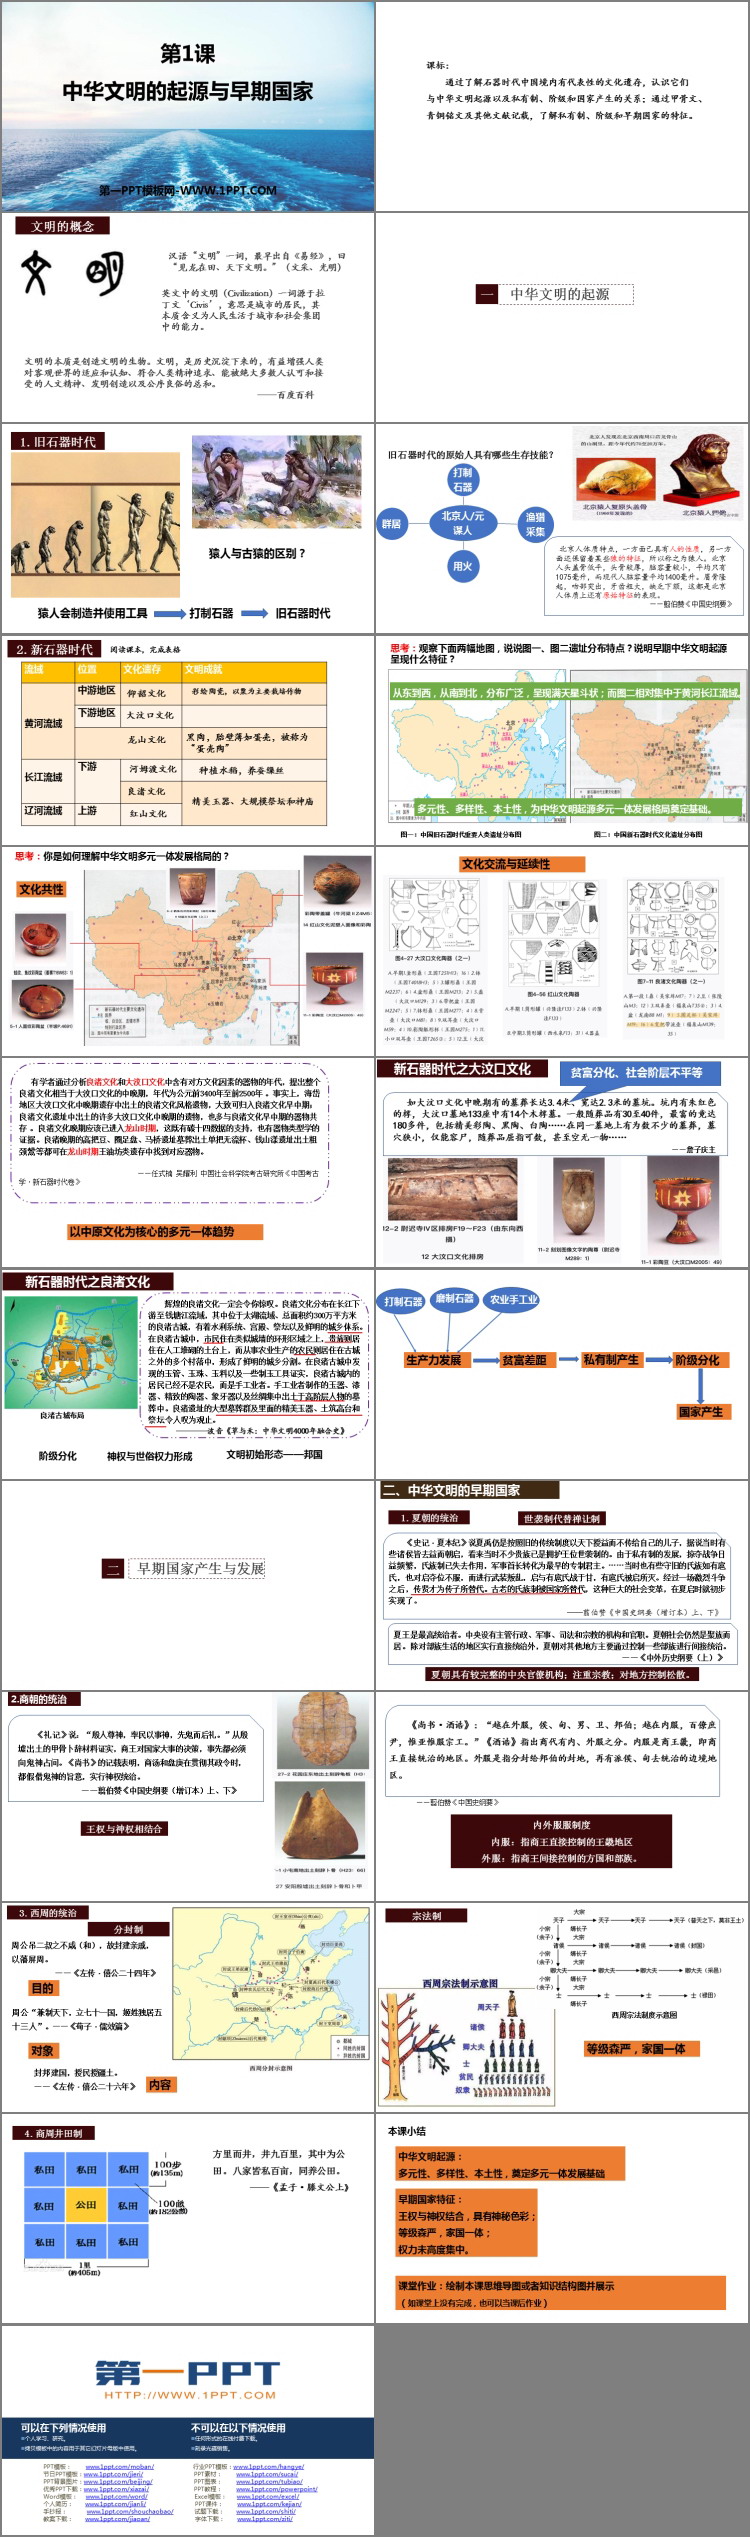 《中华文明的起源与早期国家》PPT免费下载-预览图02